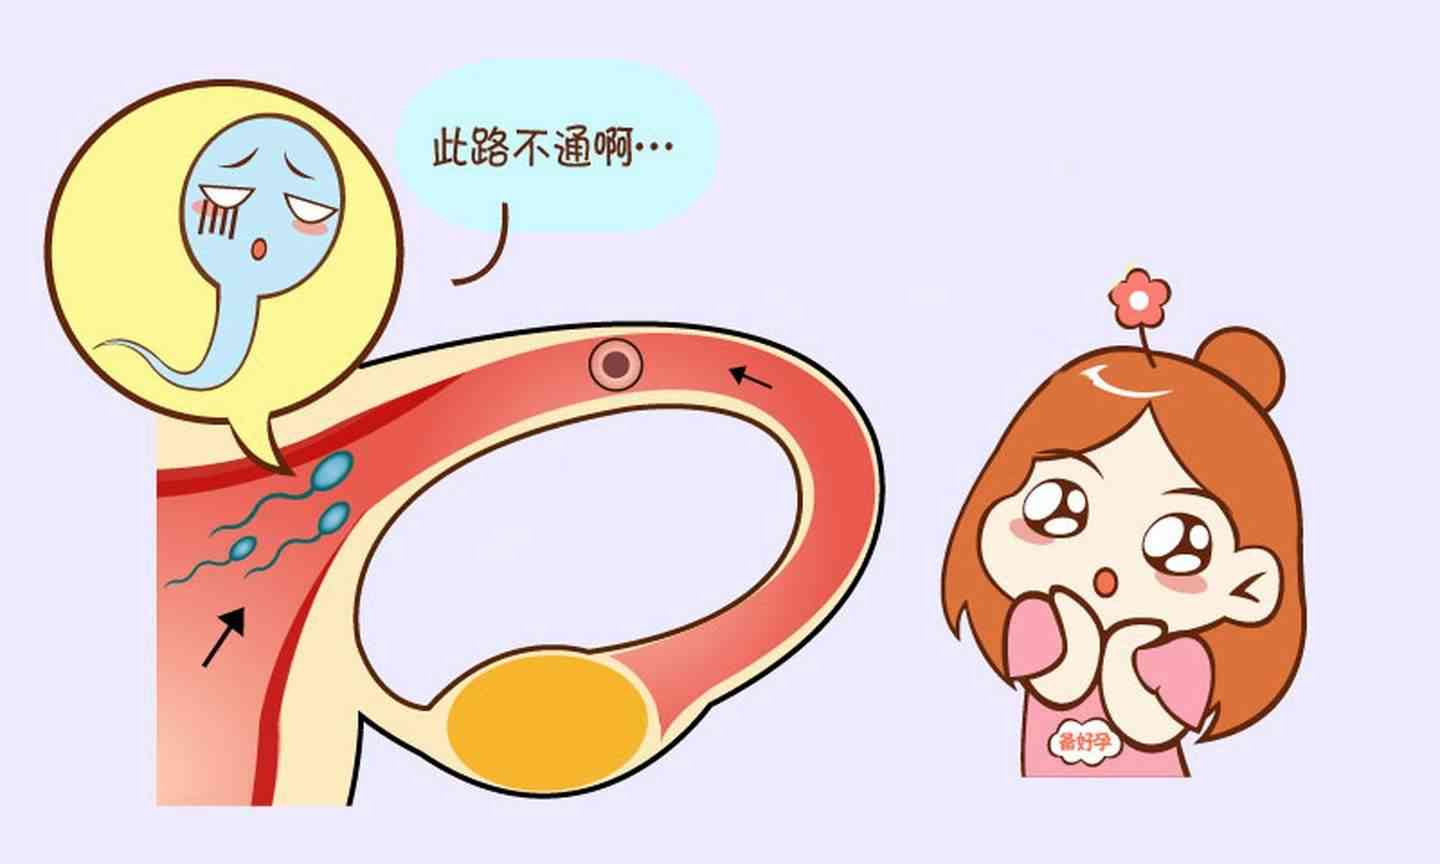 输卵管通液过程图图片